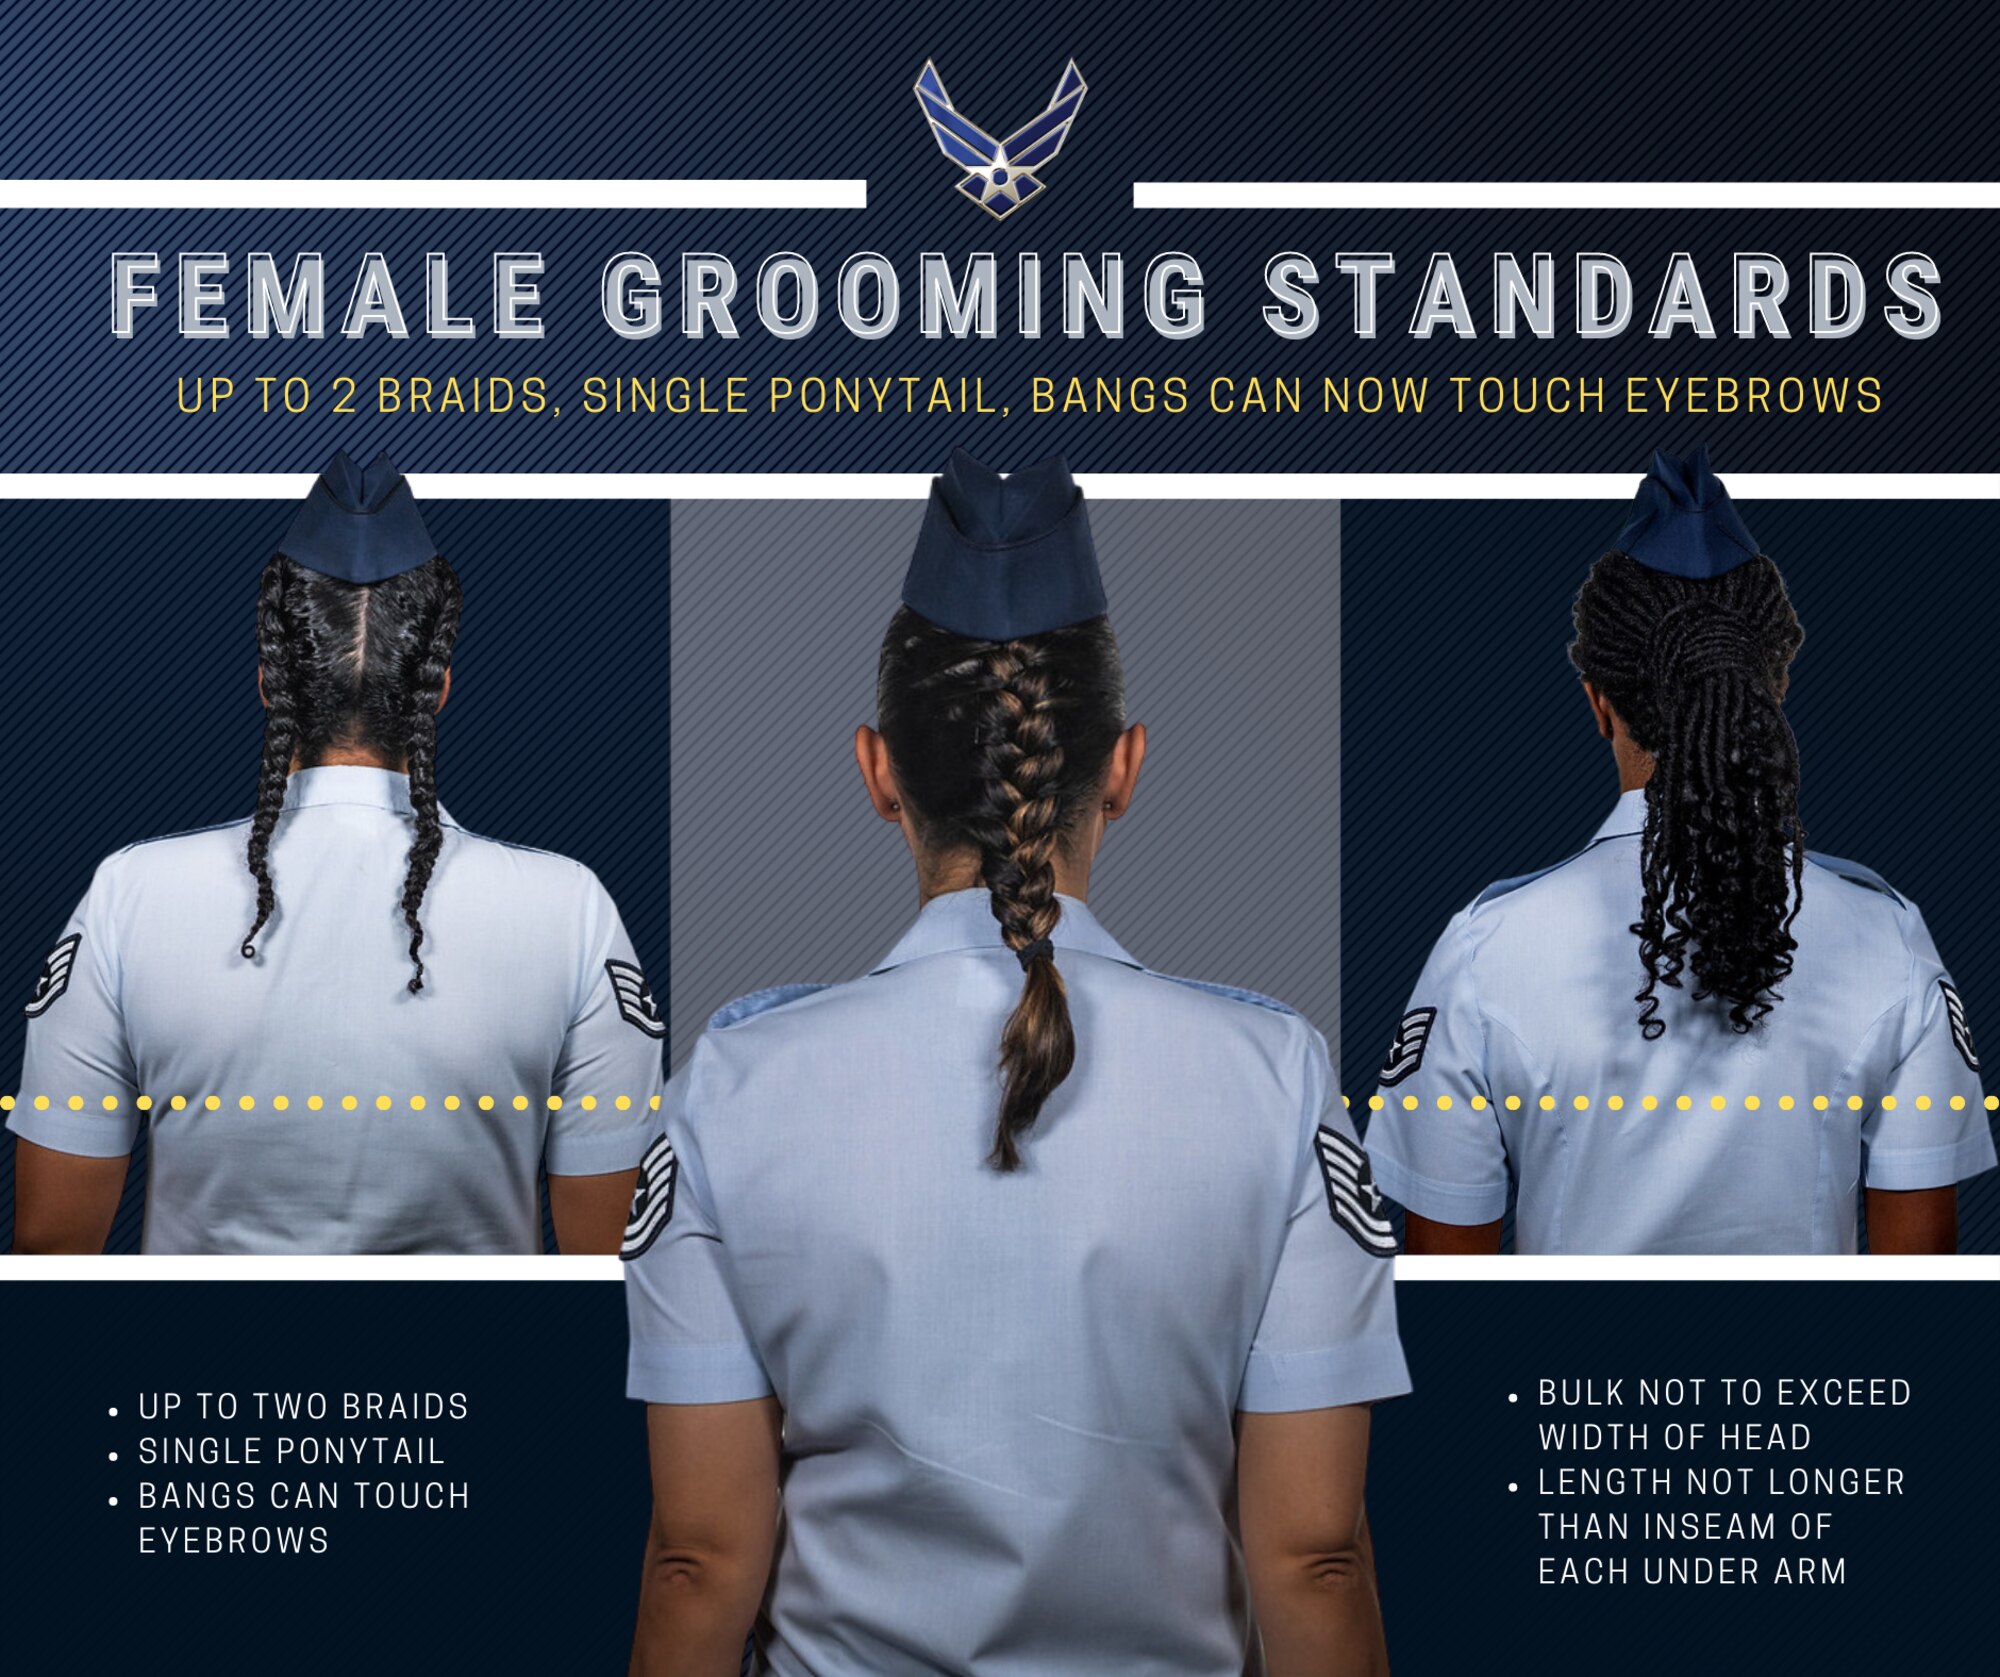 Air Force Female Grooming Standards